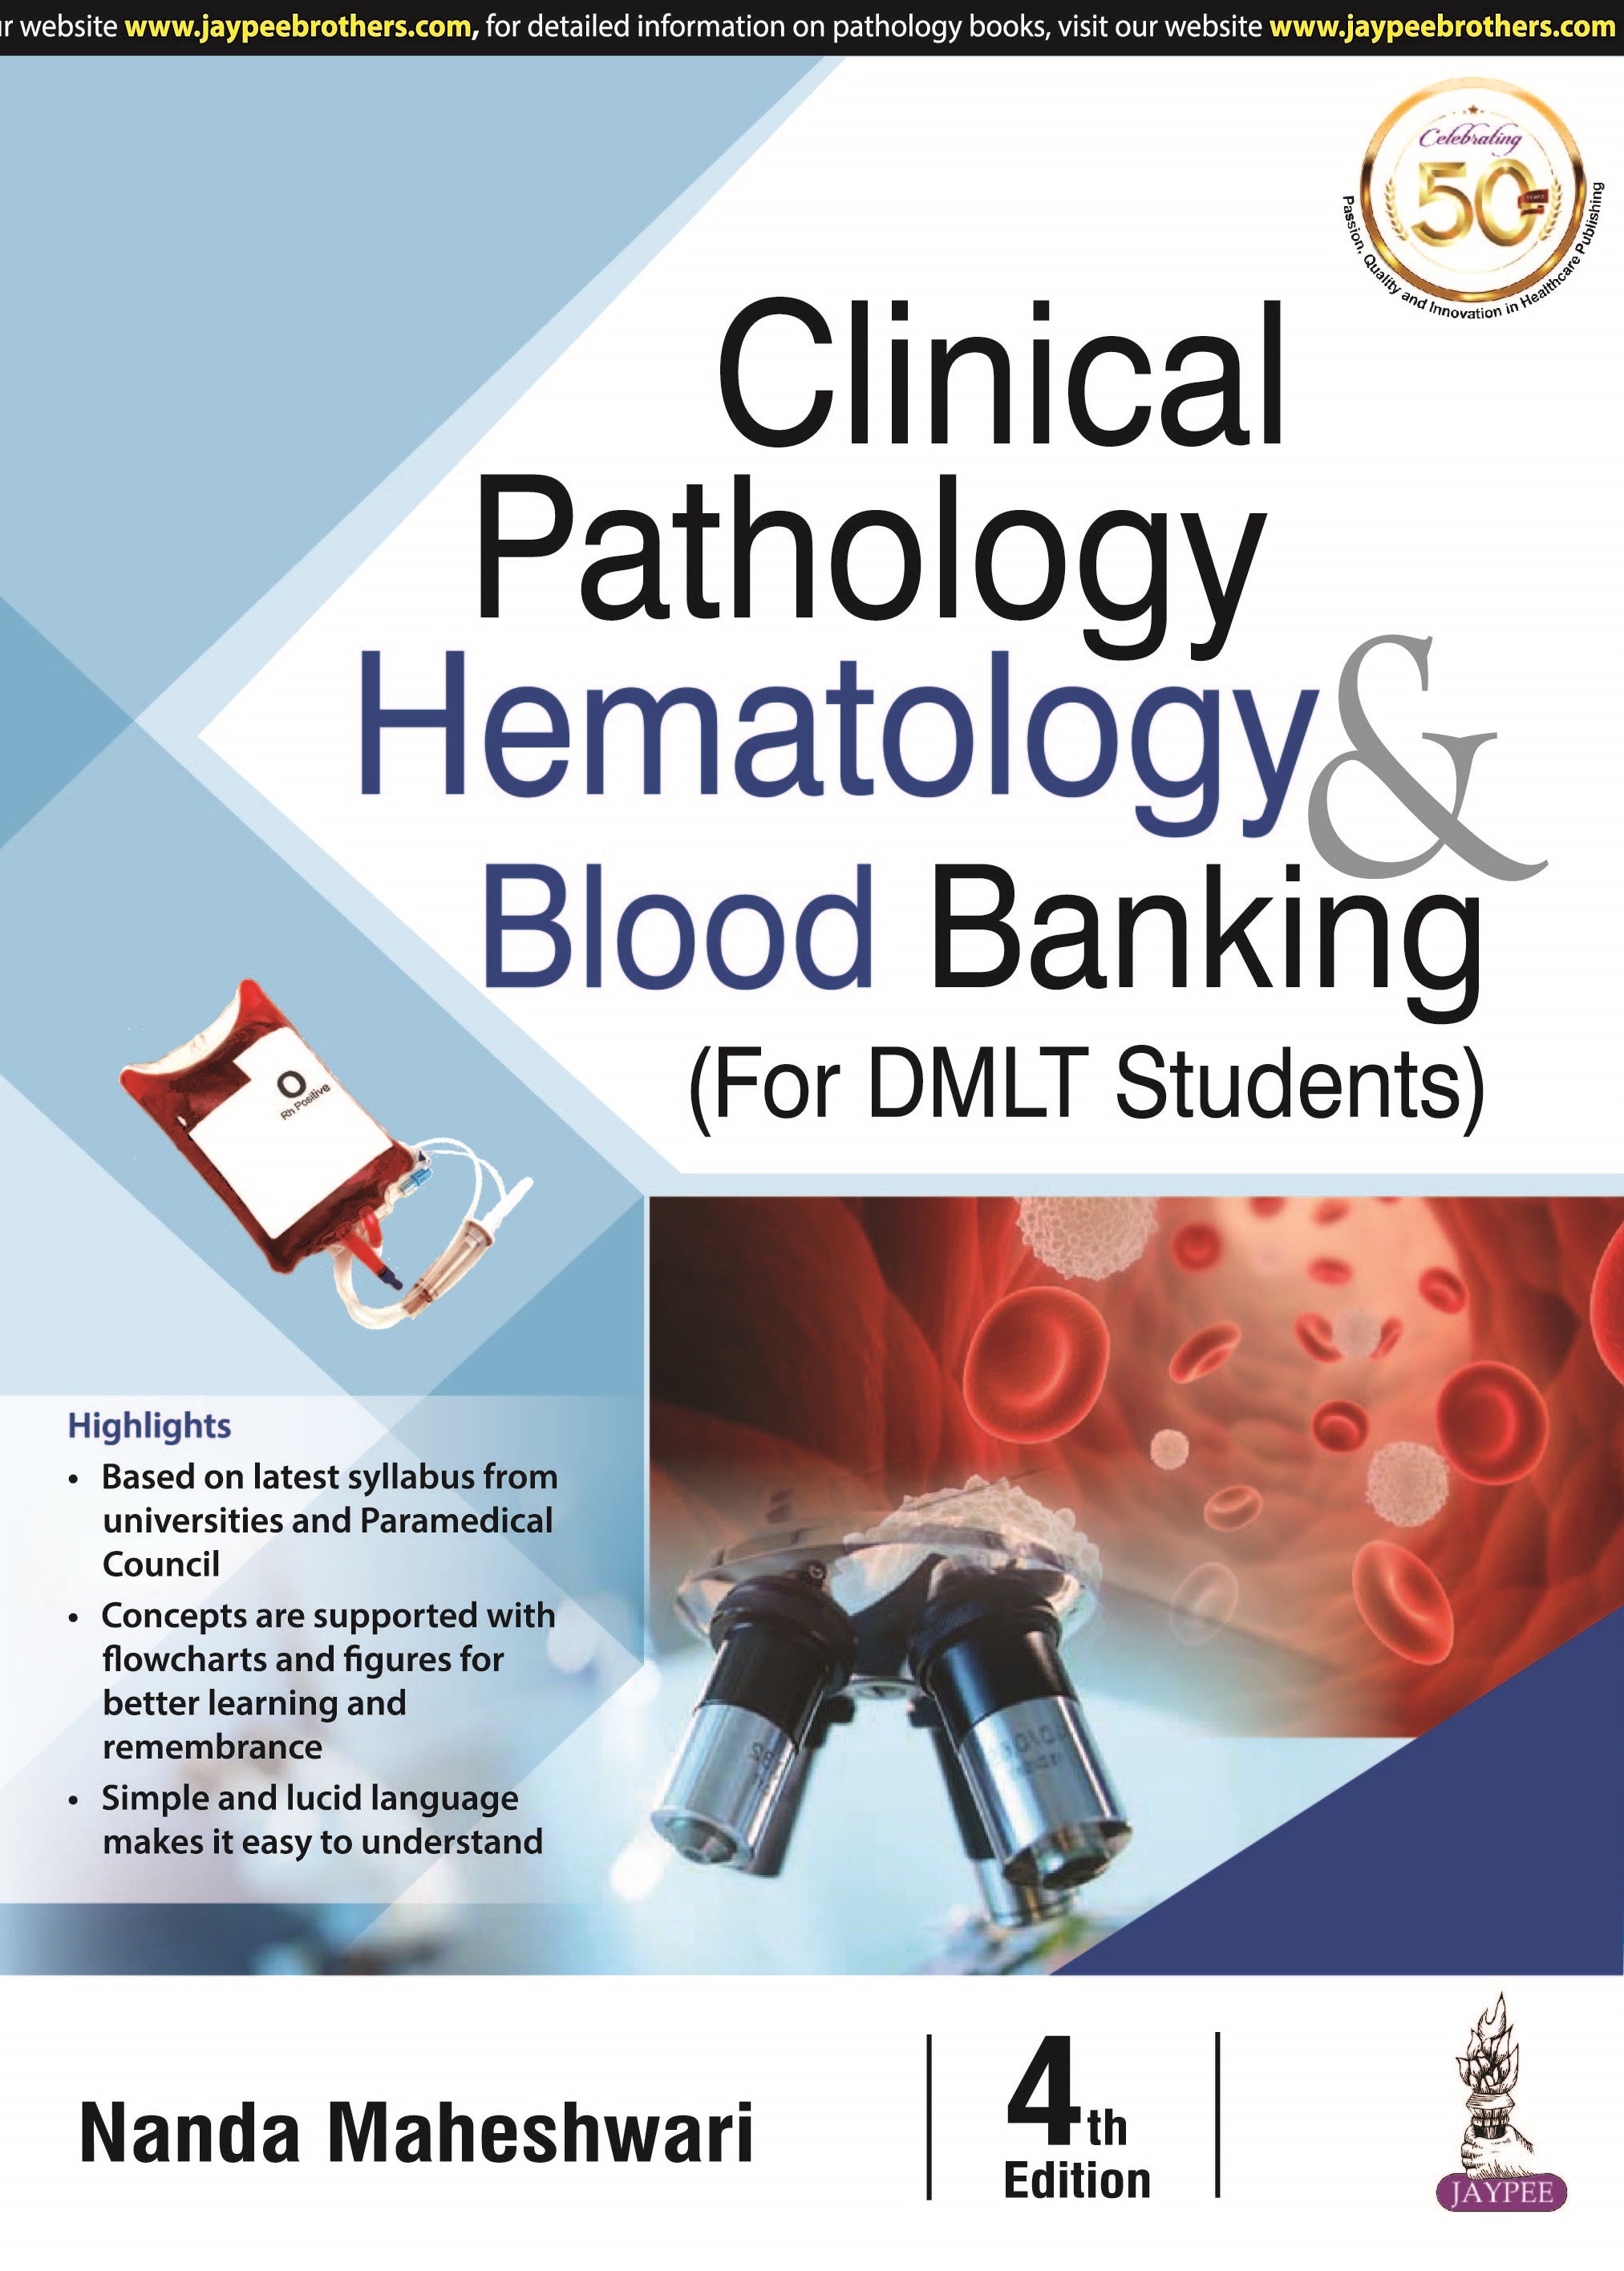 CLINICAL PATHOLOGY HEMATOLOGY & BLOOD BANKING FOR DMLT STUDENTS,4/E,NANDA MAHESHWARI